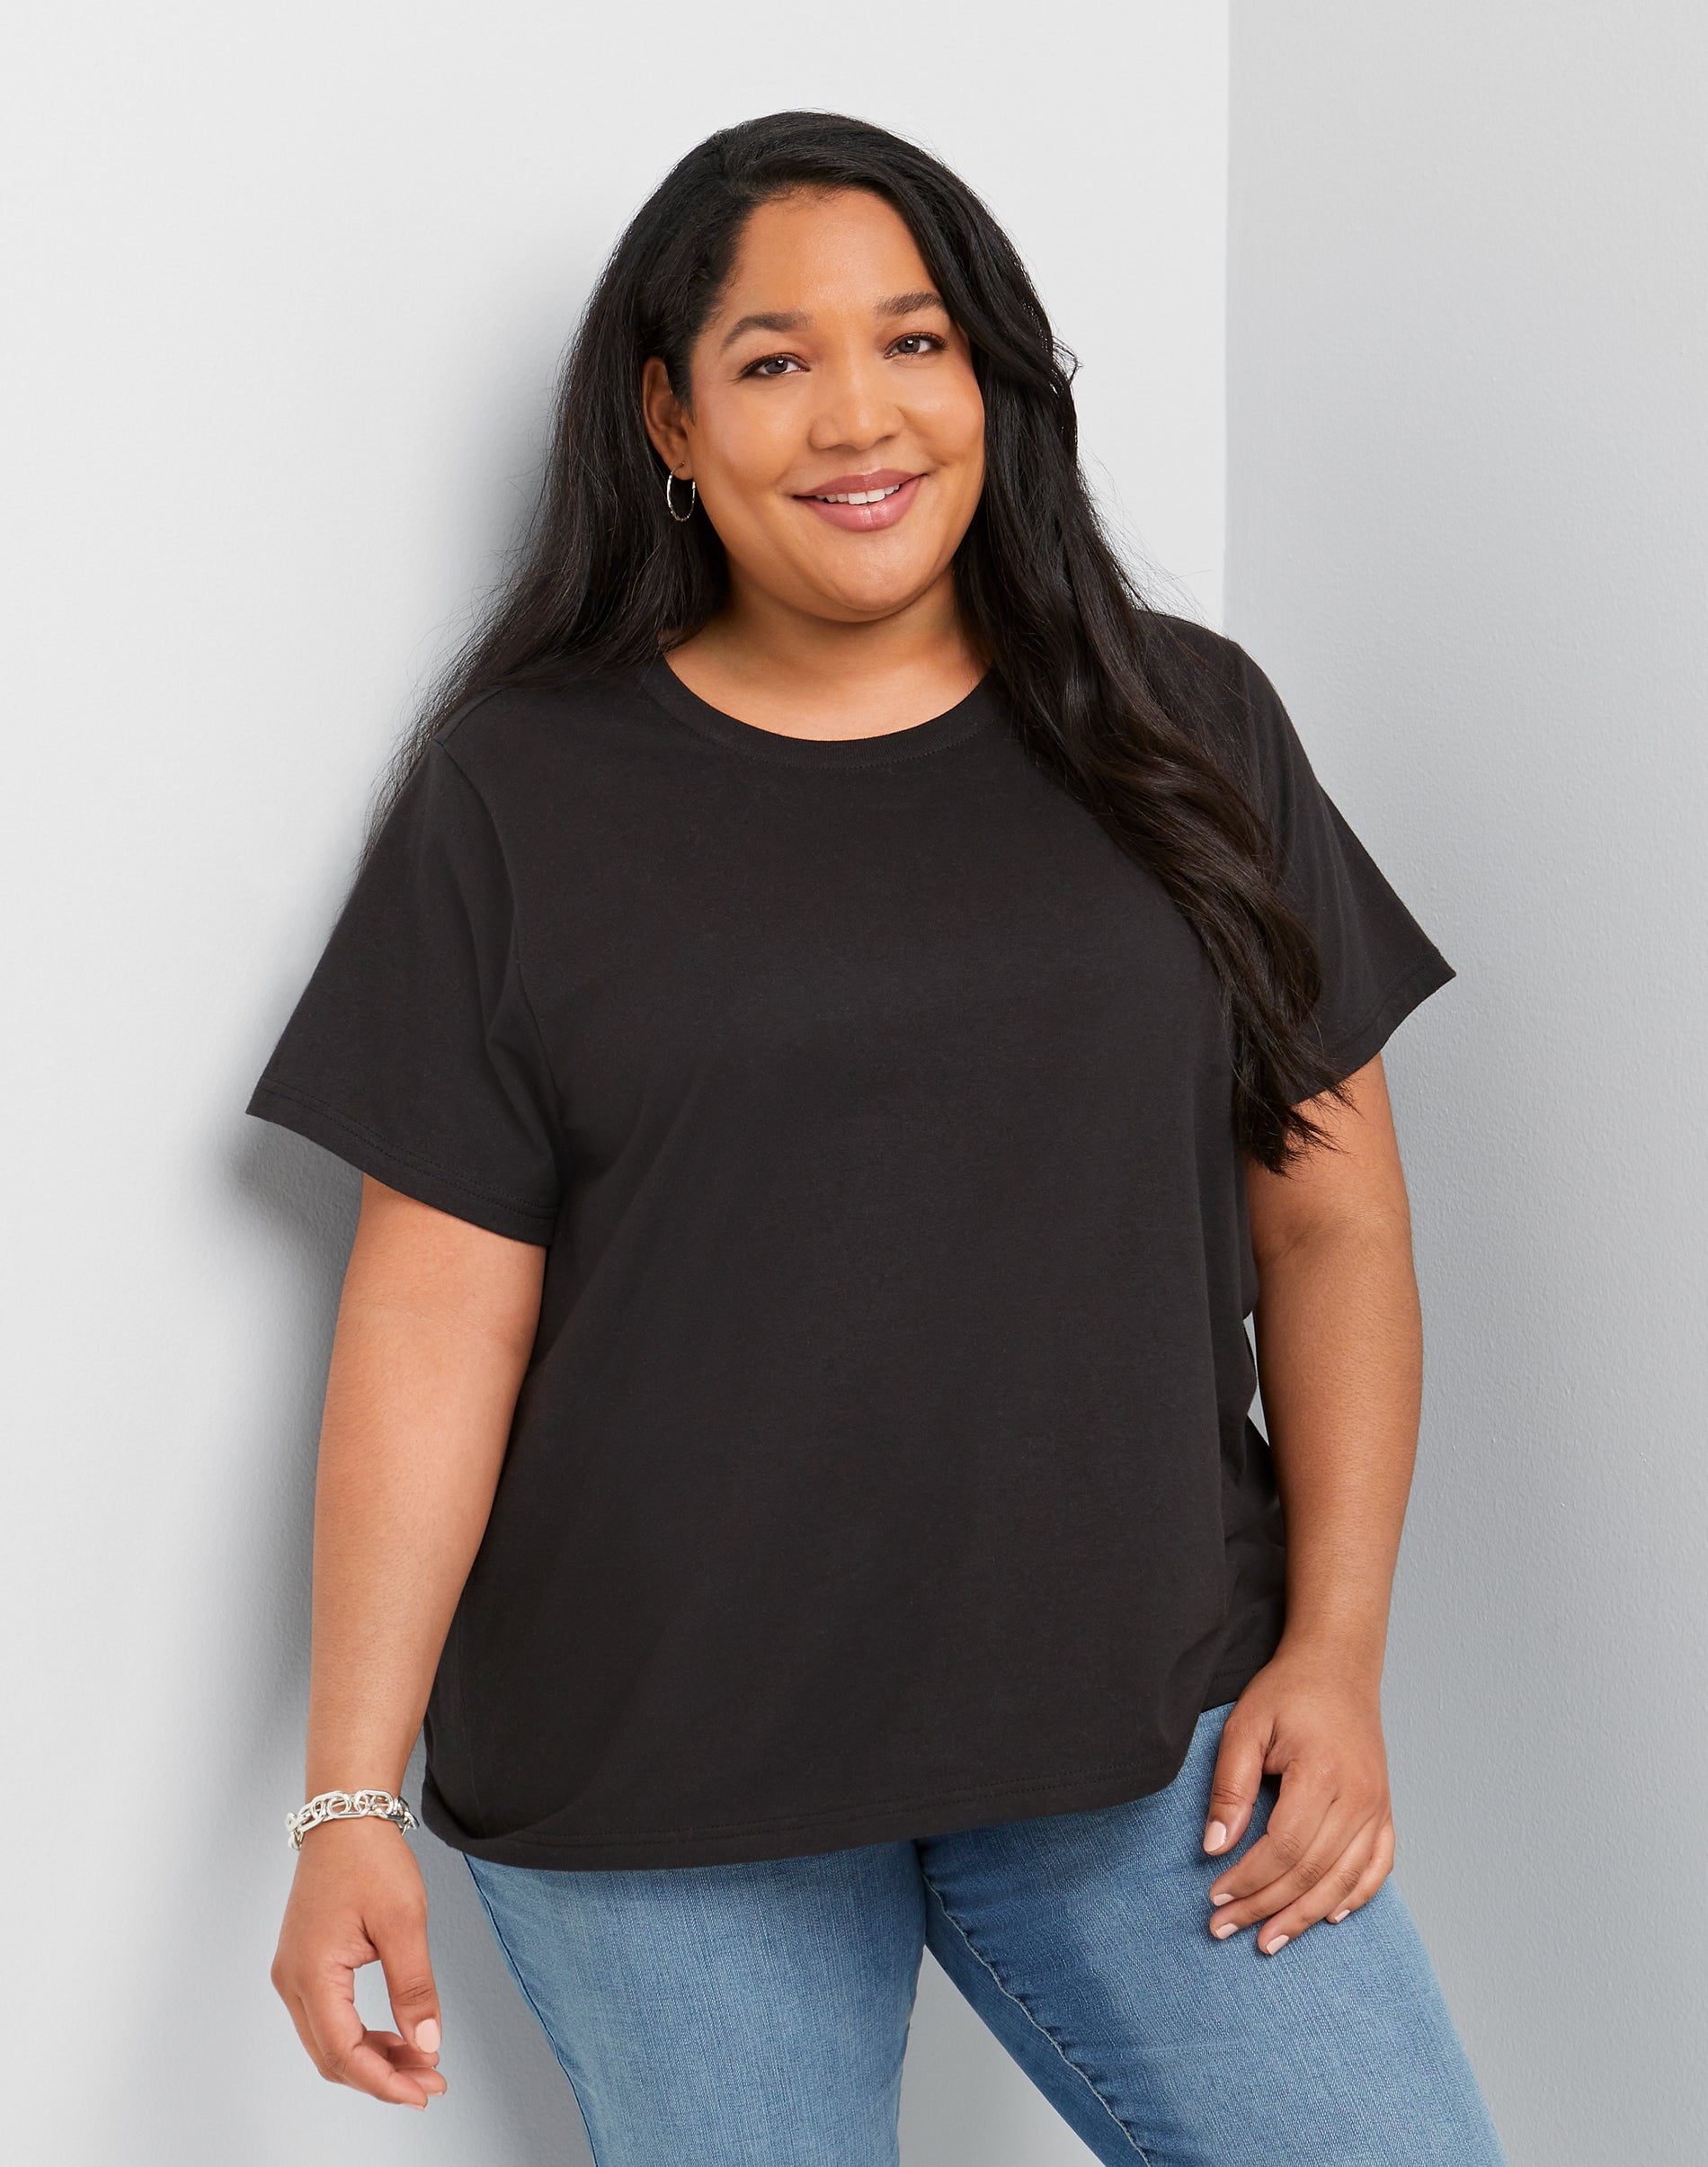 Hanes Originals Women's Cotton T-Shirt (Plus Size) Black 2X - Walmart.com